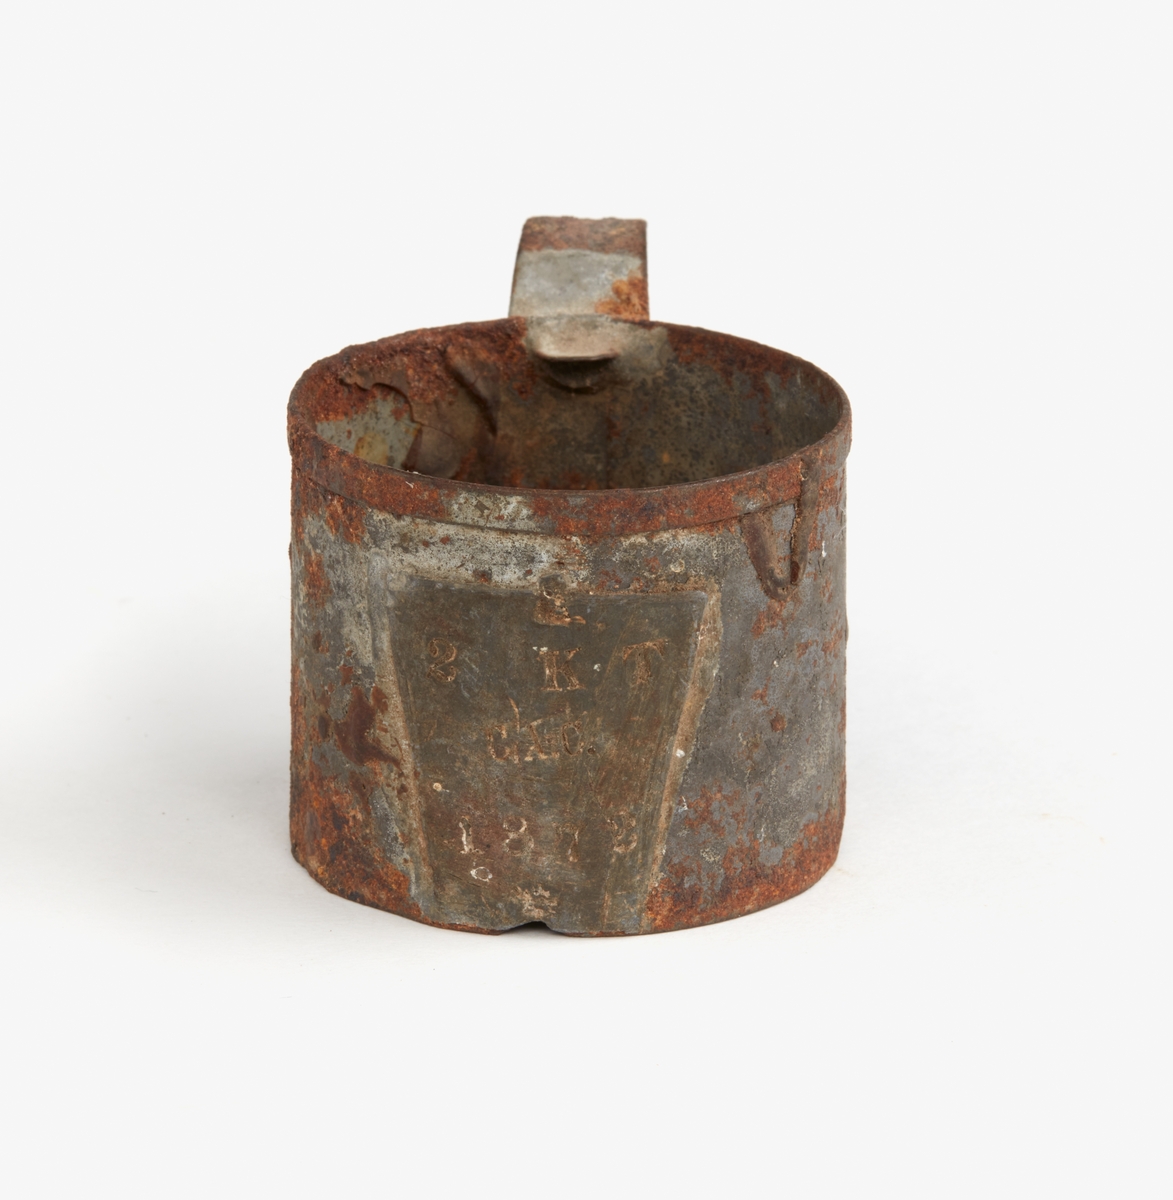 Målkärl av förtennt bleckplåt, cylindriskt med bandformigt handtag, krönt på fastlödd blyplåt "1872", "2 KT" (kubiktum) och "C.A.C." Beckliknande bottensats.
1 tum = 2,47 cm.